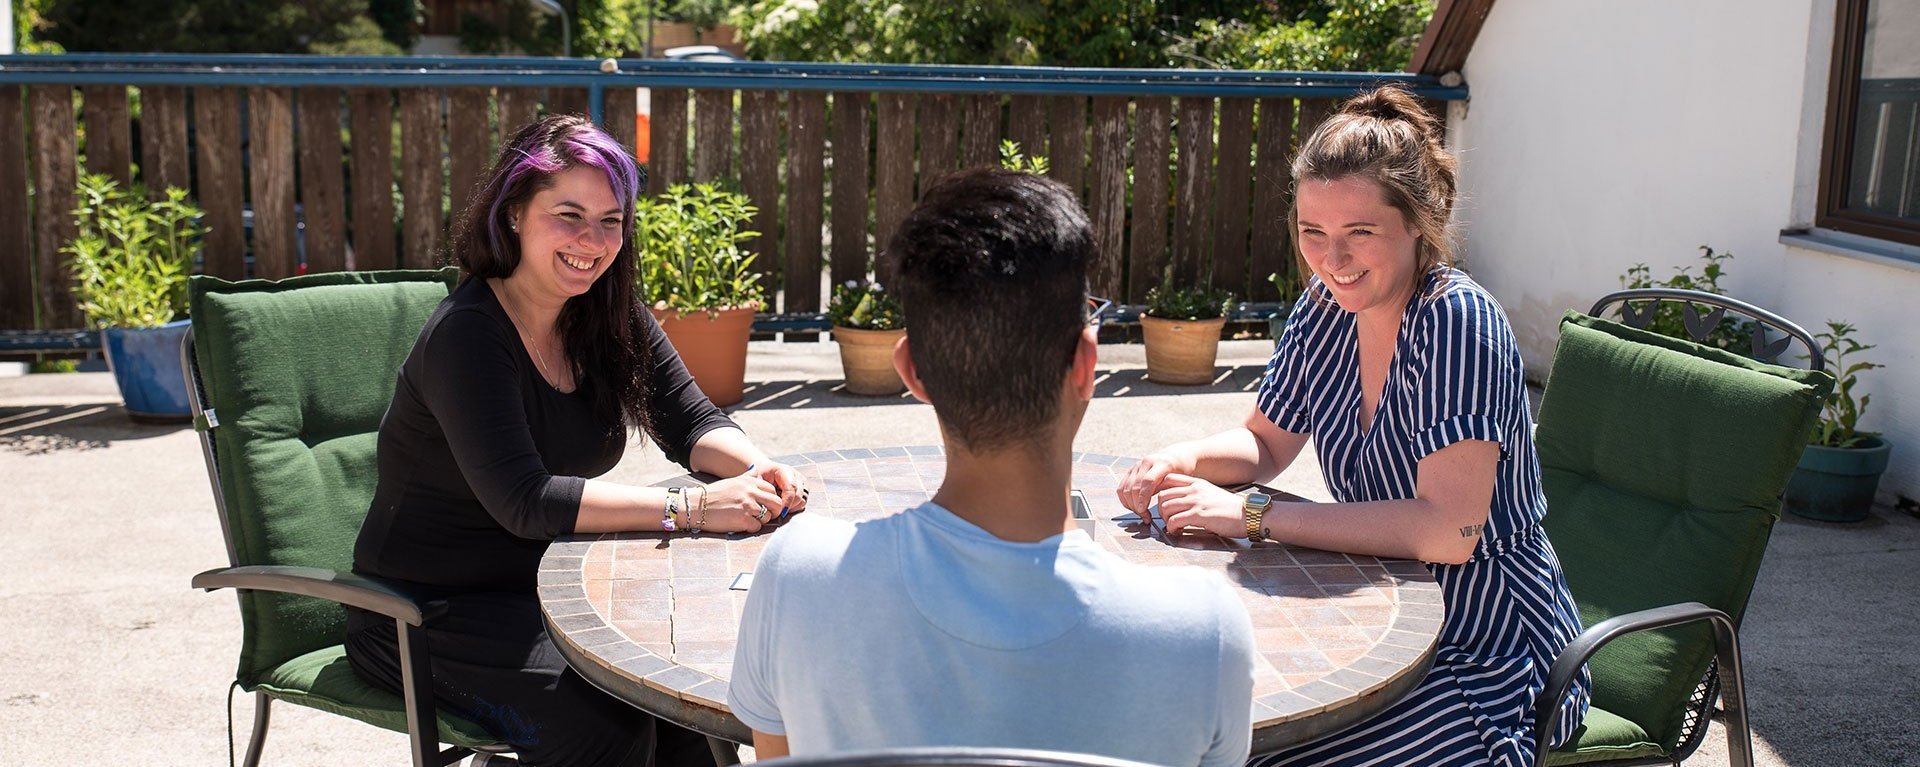 Zwei junge Frauen und ein Mann sitzen an einem steinernen Gartentisch - Der Mann scheint einen Spaß gemacht zu haben - beide Frauen lachen